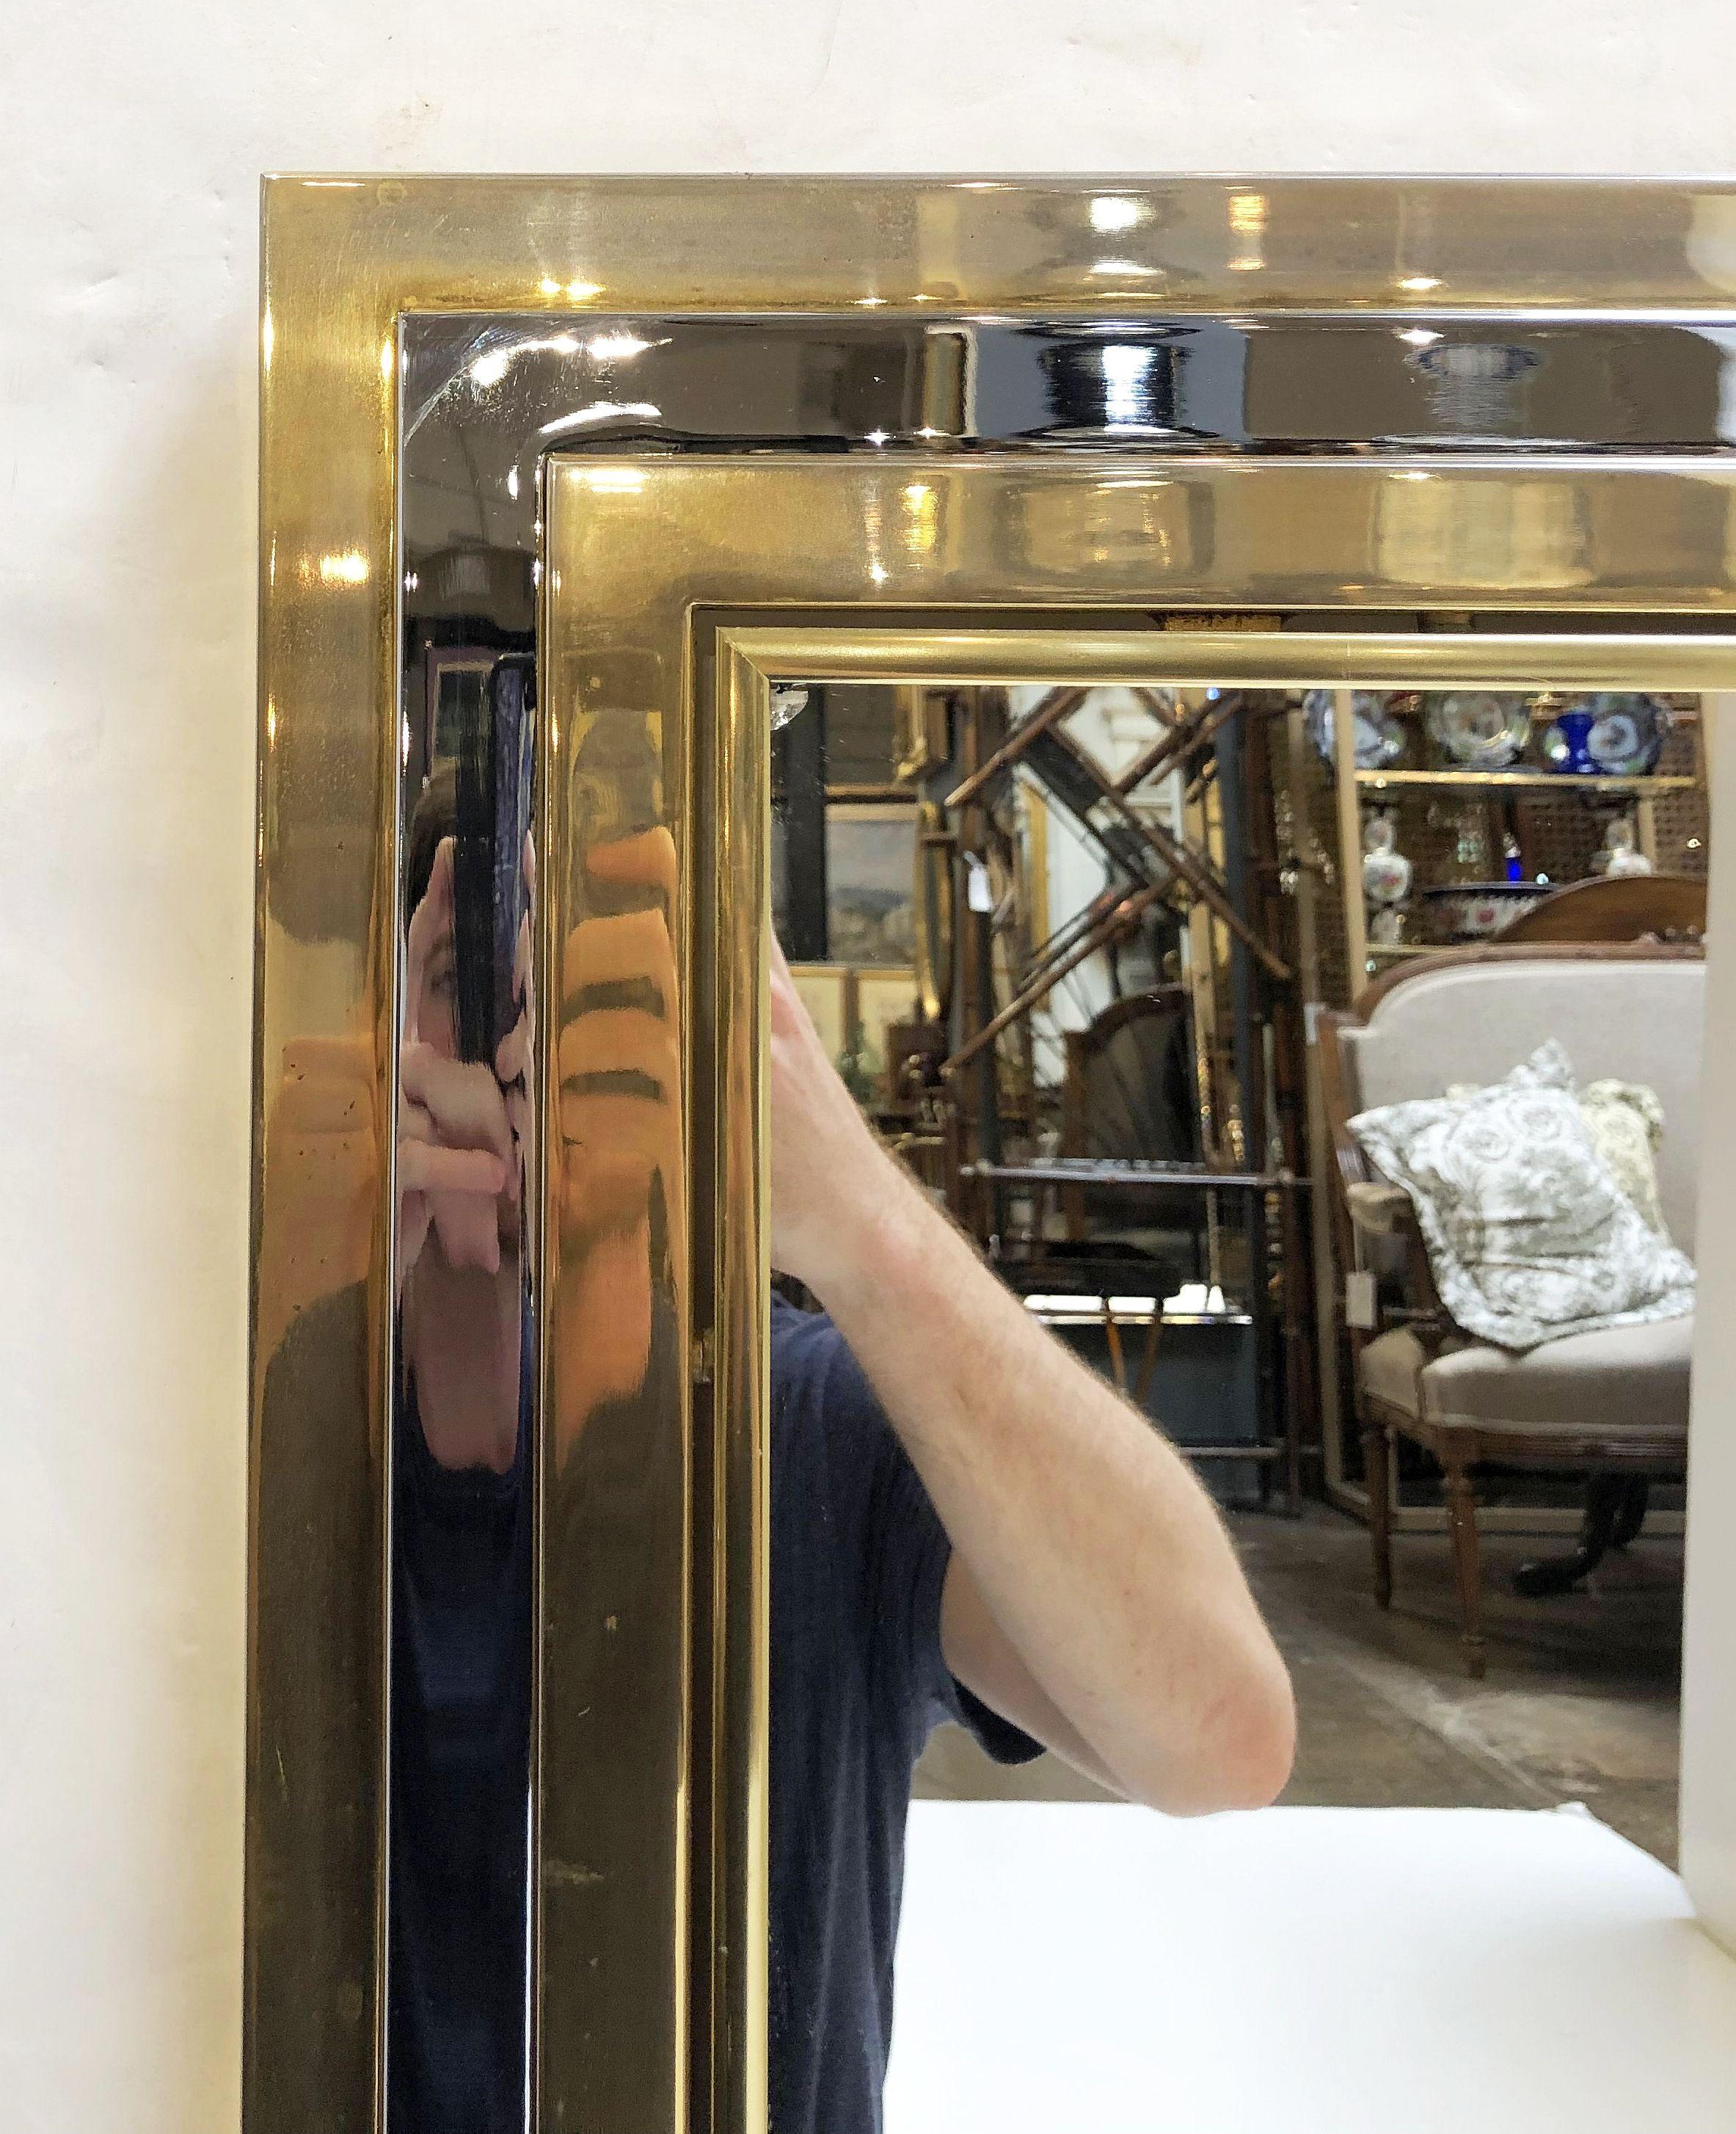 art deco brass mirror